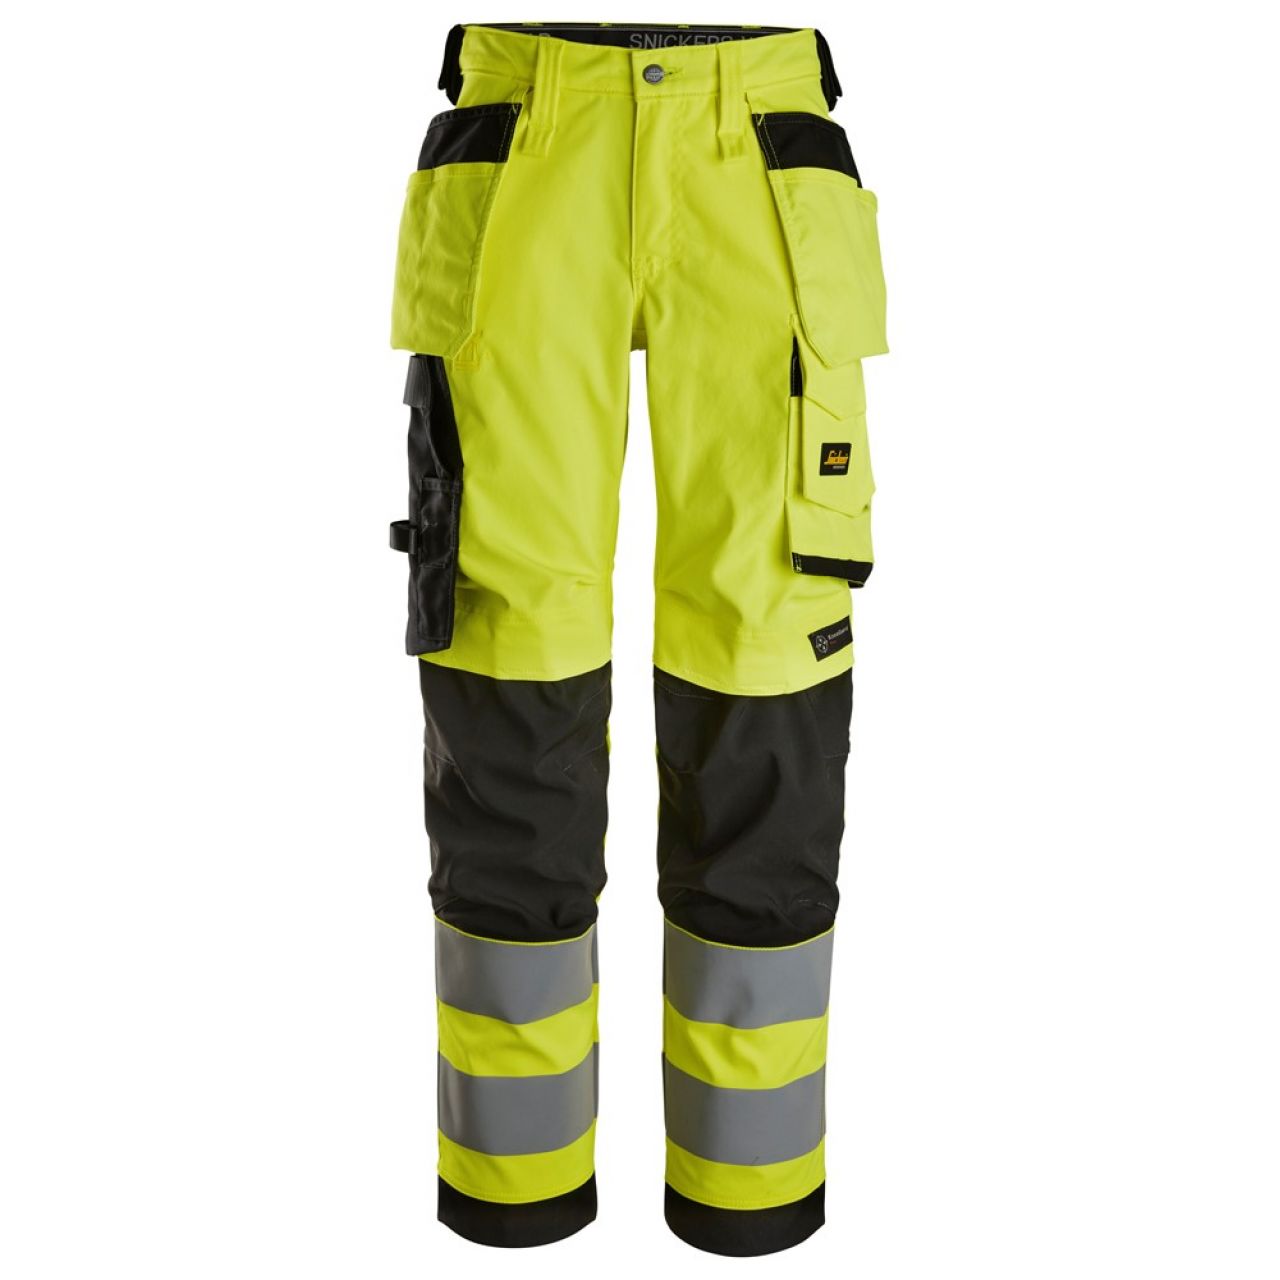 6743 Pantalones largos de trabajo elásticos de alta visibilidad clase 2 para mujer con bolsillos flotantes amarillo-negro talla 54